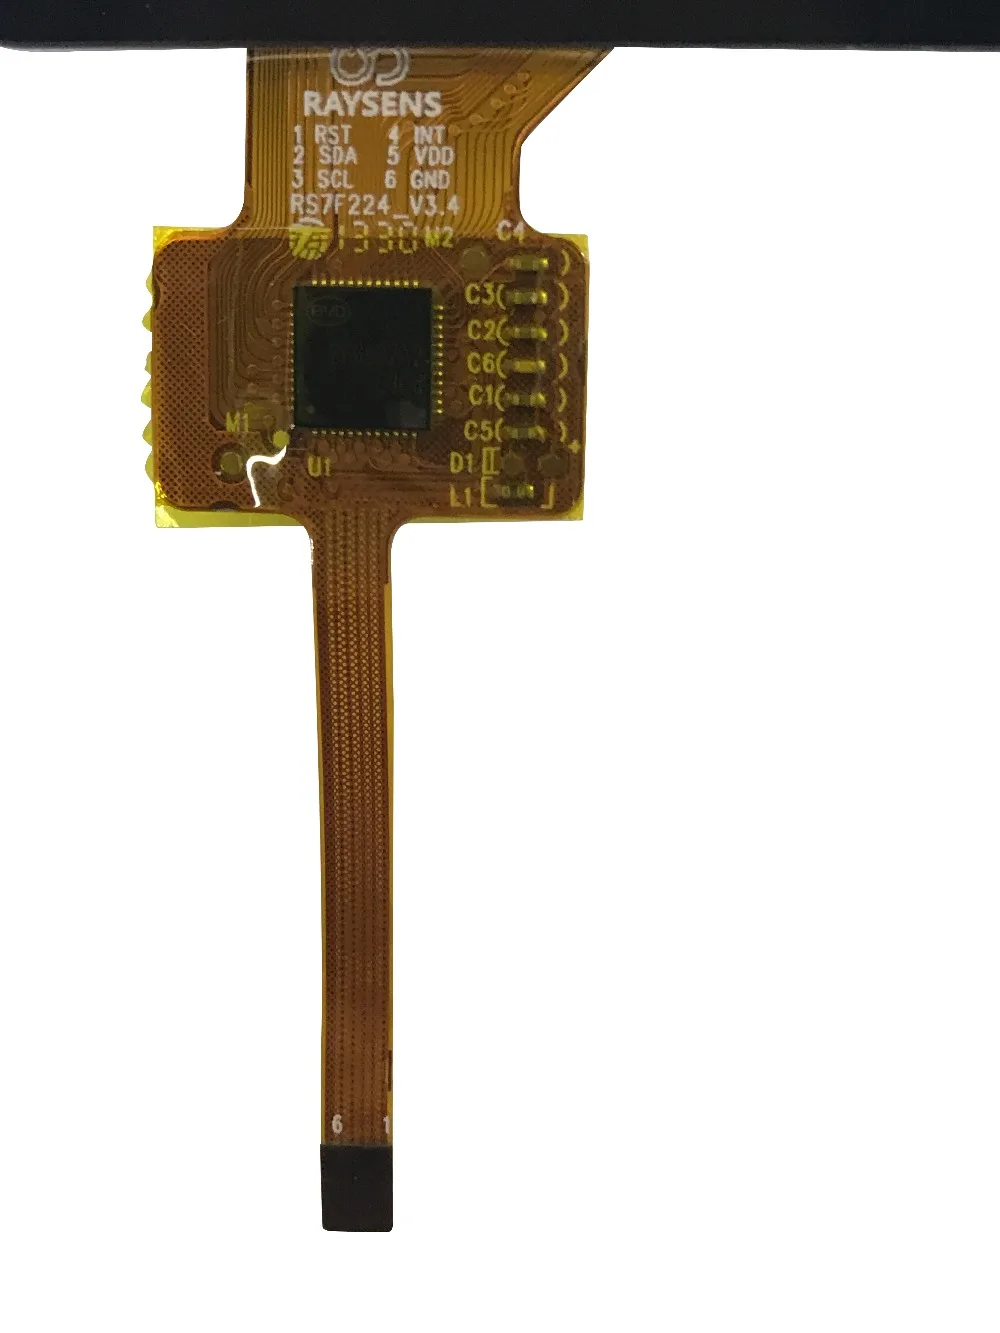 " Prestigio MultiPad 7,0 Ultra Duo PMP5870c Fly 3g RS7F224_V3.4 планшет сенсорный экран Сенсорная панель дигитайзер стеклянный датчик